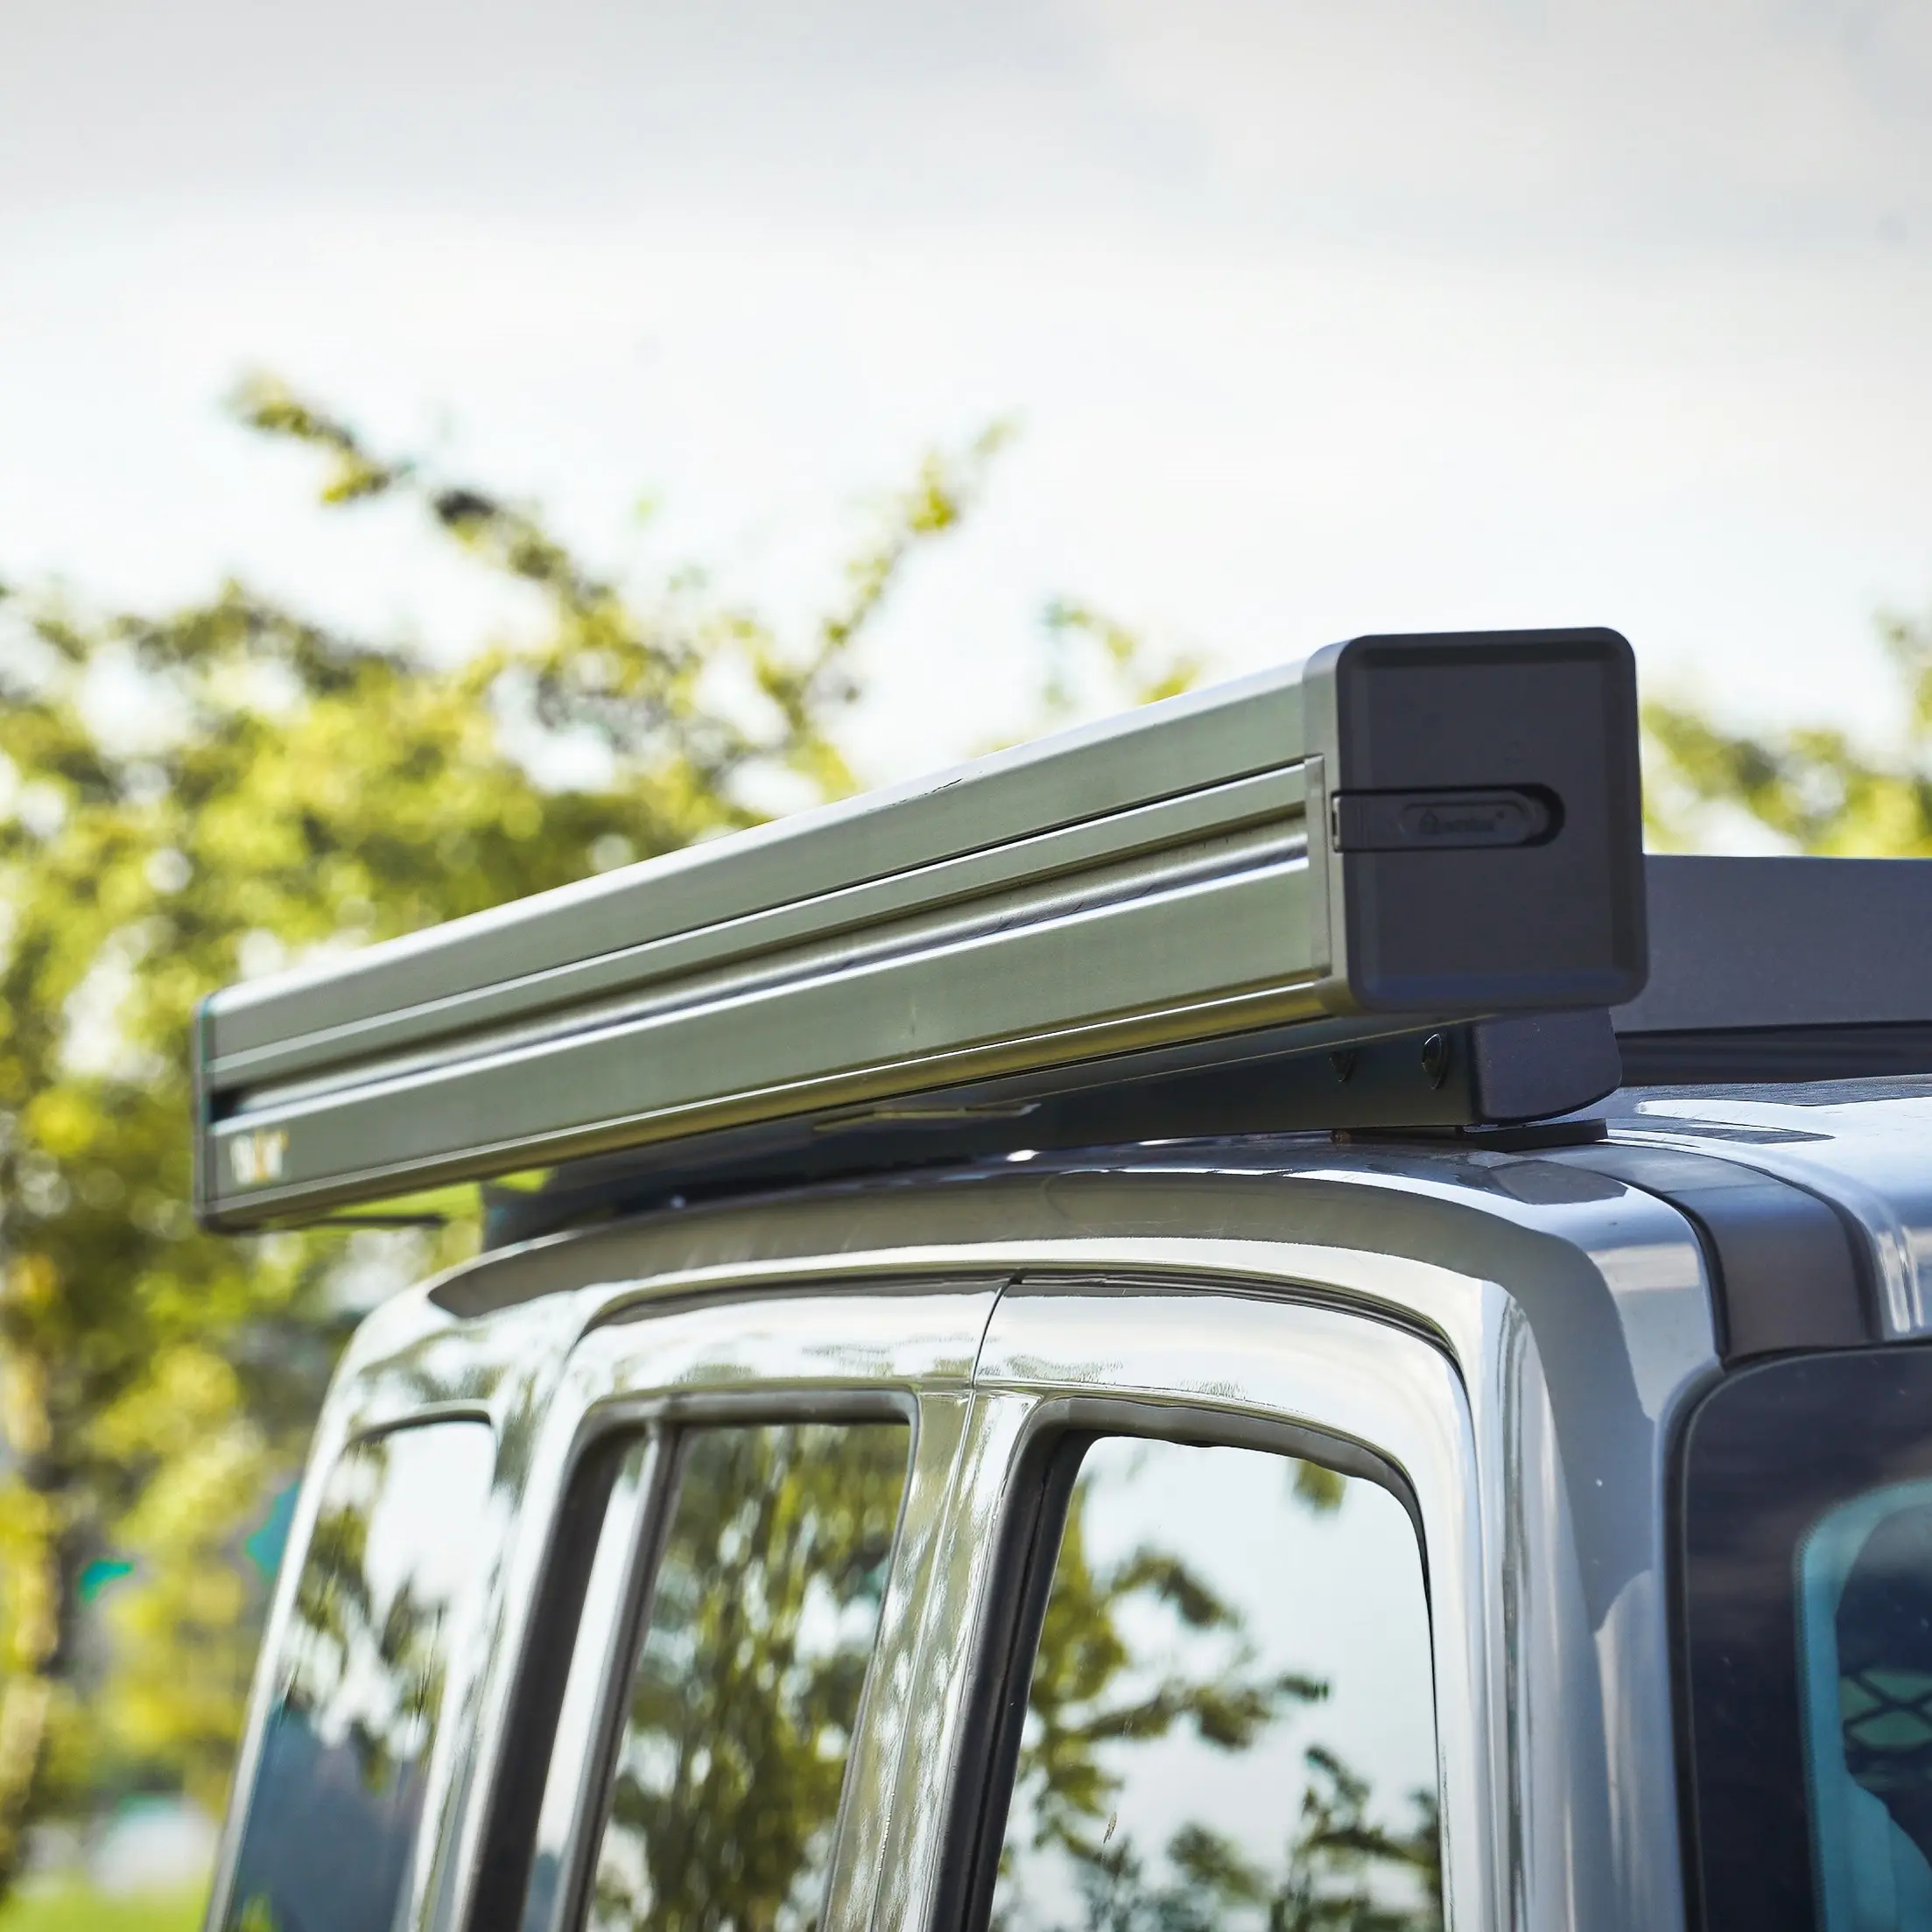 Awnlux imperméable rétractable 4x4 tout-terrain camion camping-car toit voiture côté auvent tente pour le camping en plein air